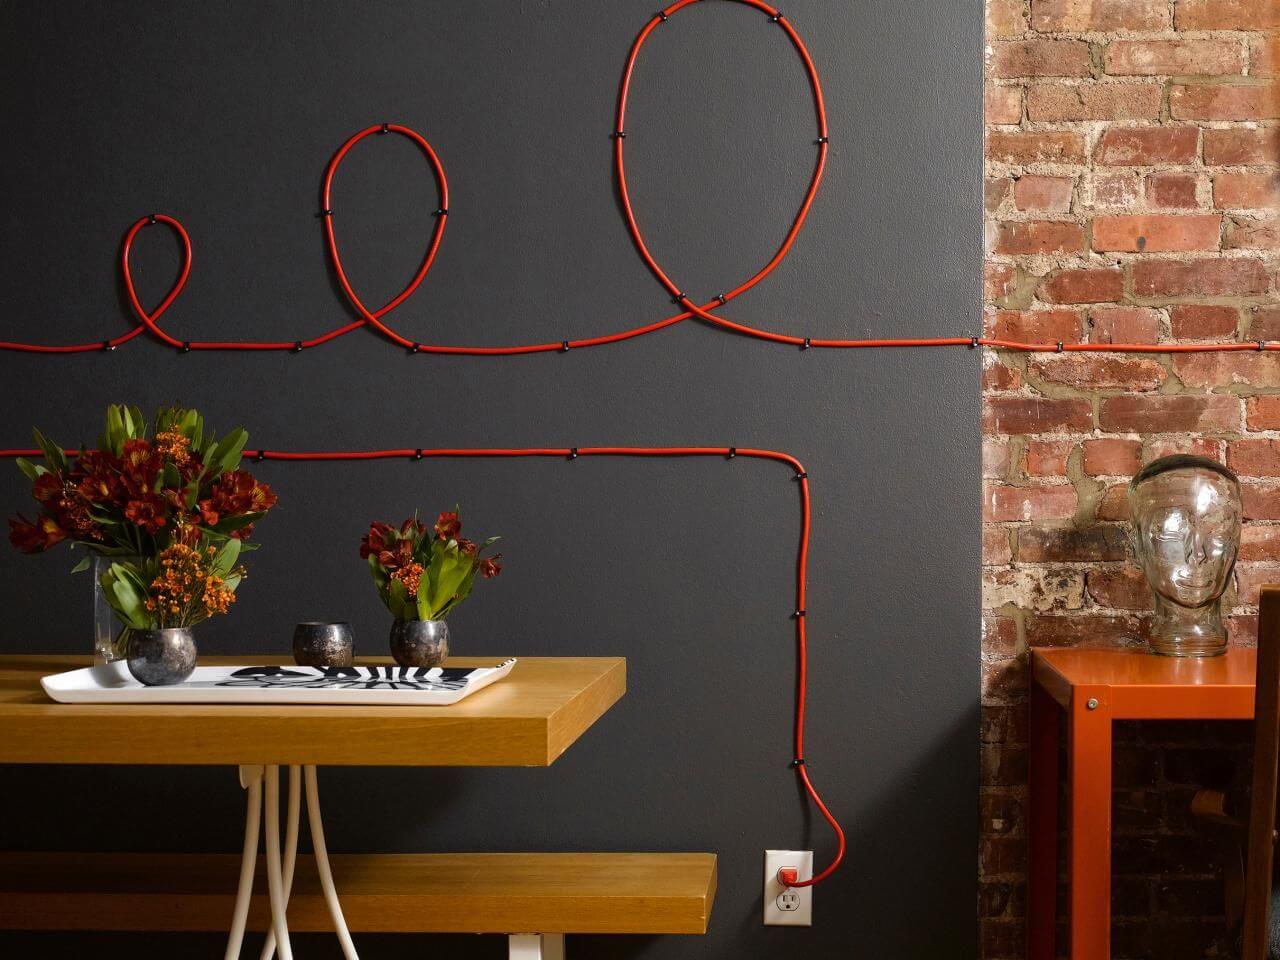 Прячем провода на стене от телевизора-способы маскировки кабелей - самстрой - строительство, дизайн, архитектура.